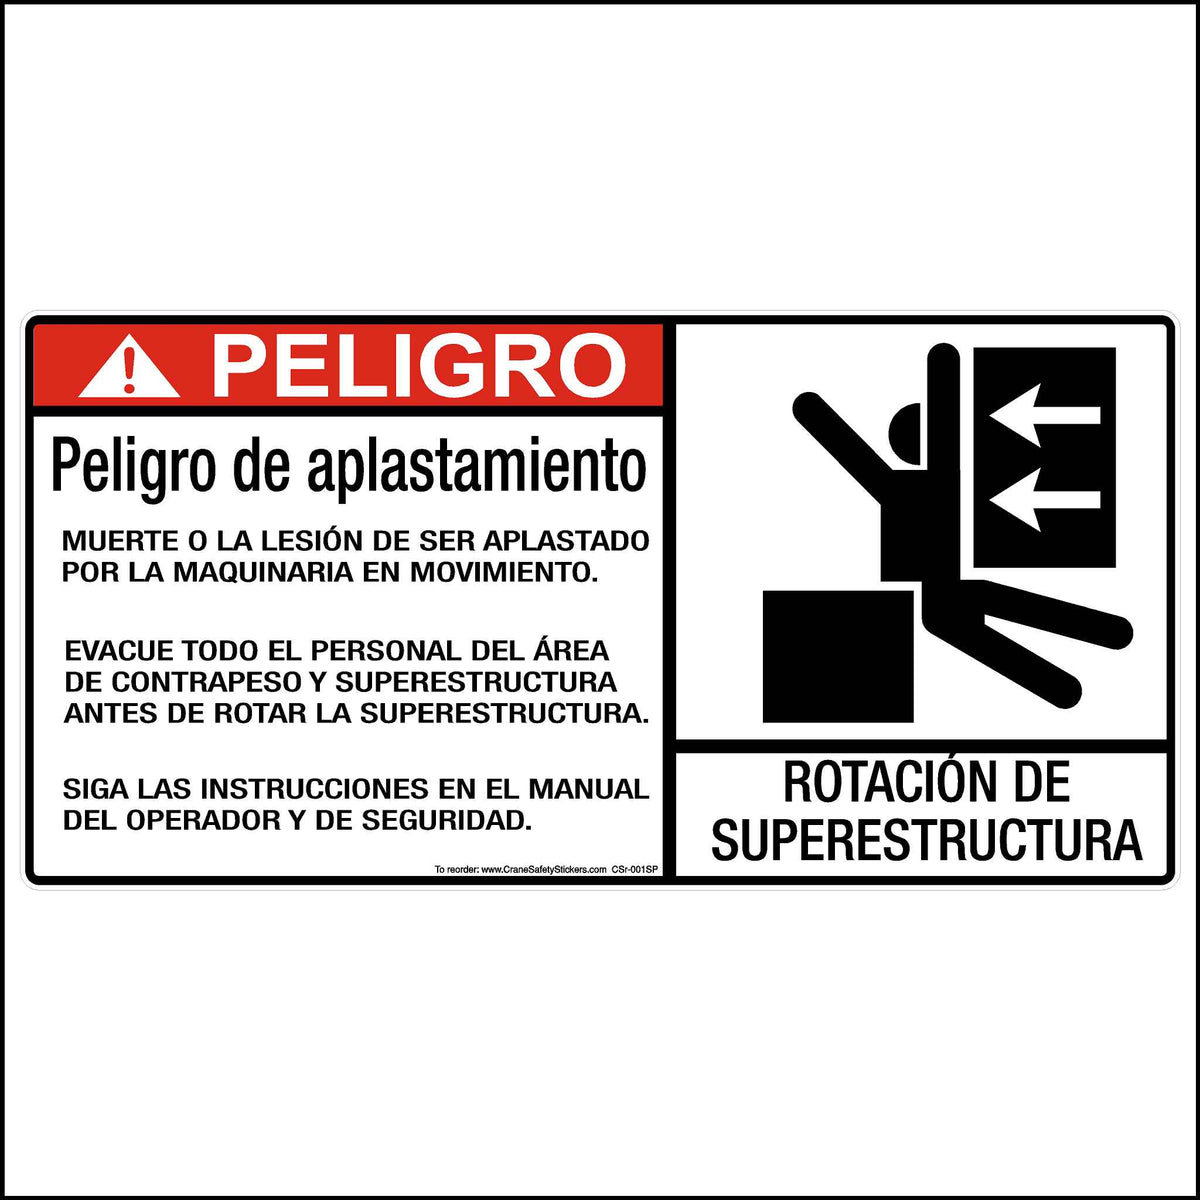 Spanish Superstructure Rotation Hazard Decal For Cranes. This Decal Is Printed With,peligro de aplastamiento muerte o la lesion de ser aplistado por la maquinaria en movimiento. 